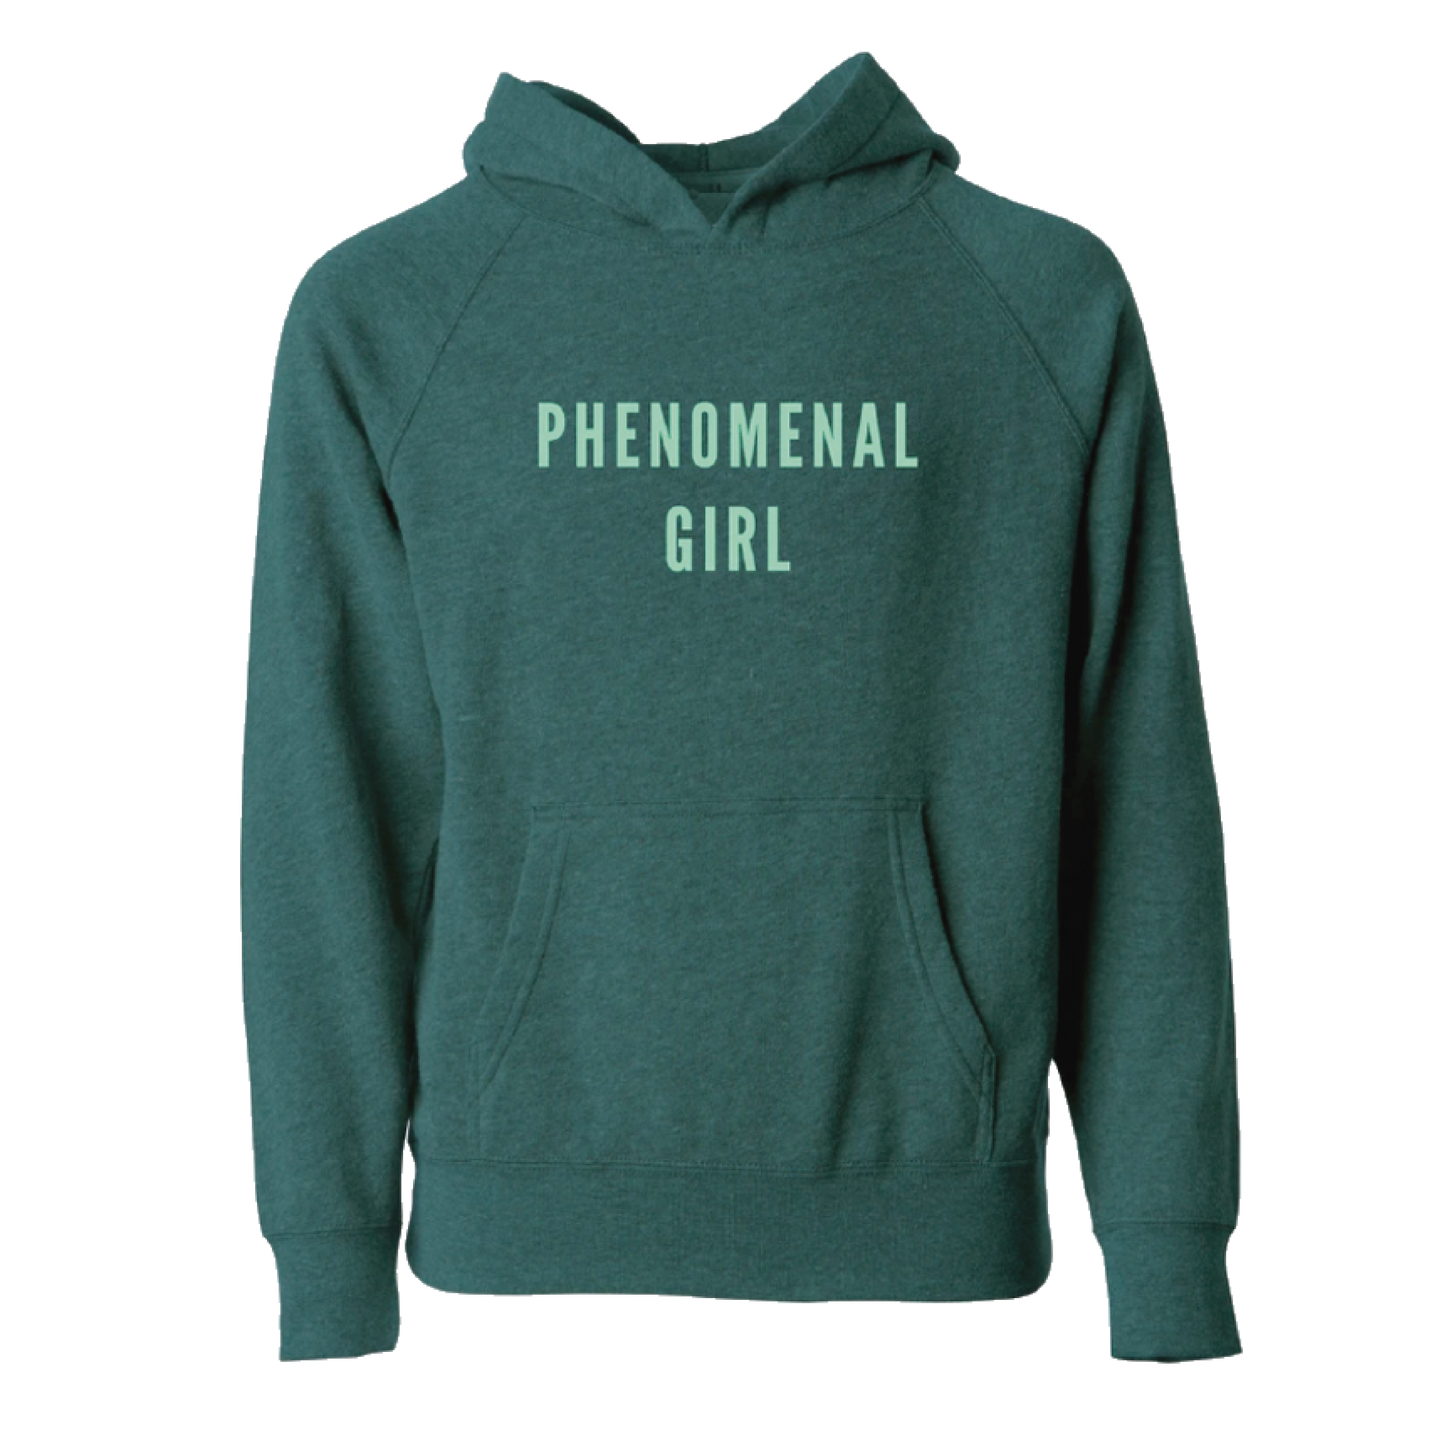 Phenomenal Girl Lightweight Hoodie Sweatshirt (Kids)